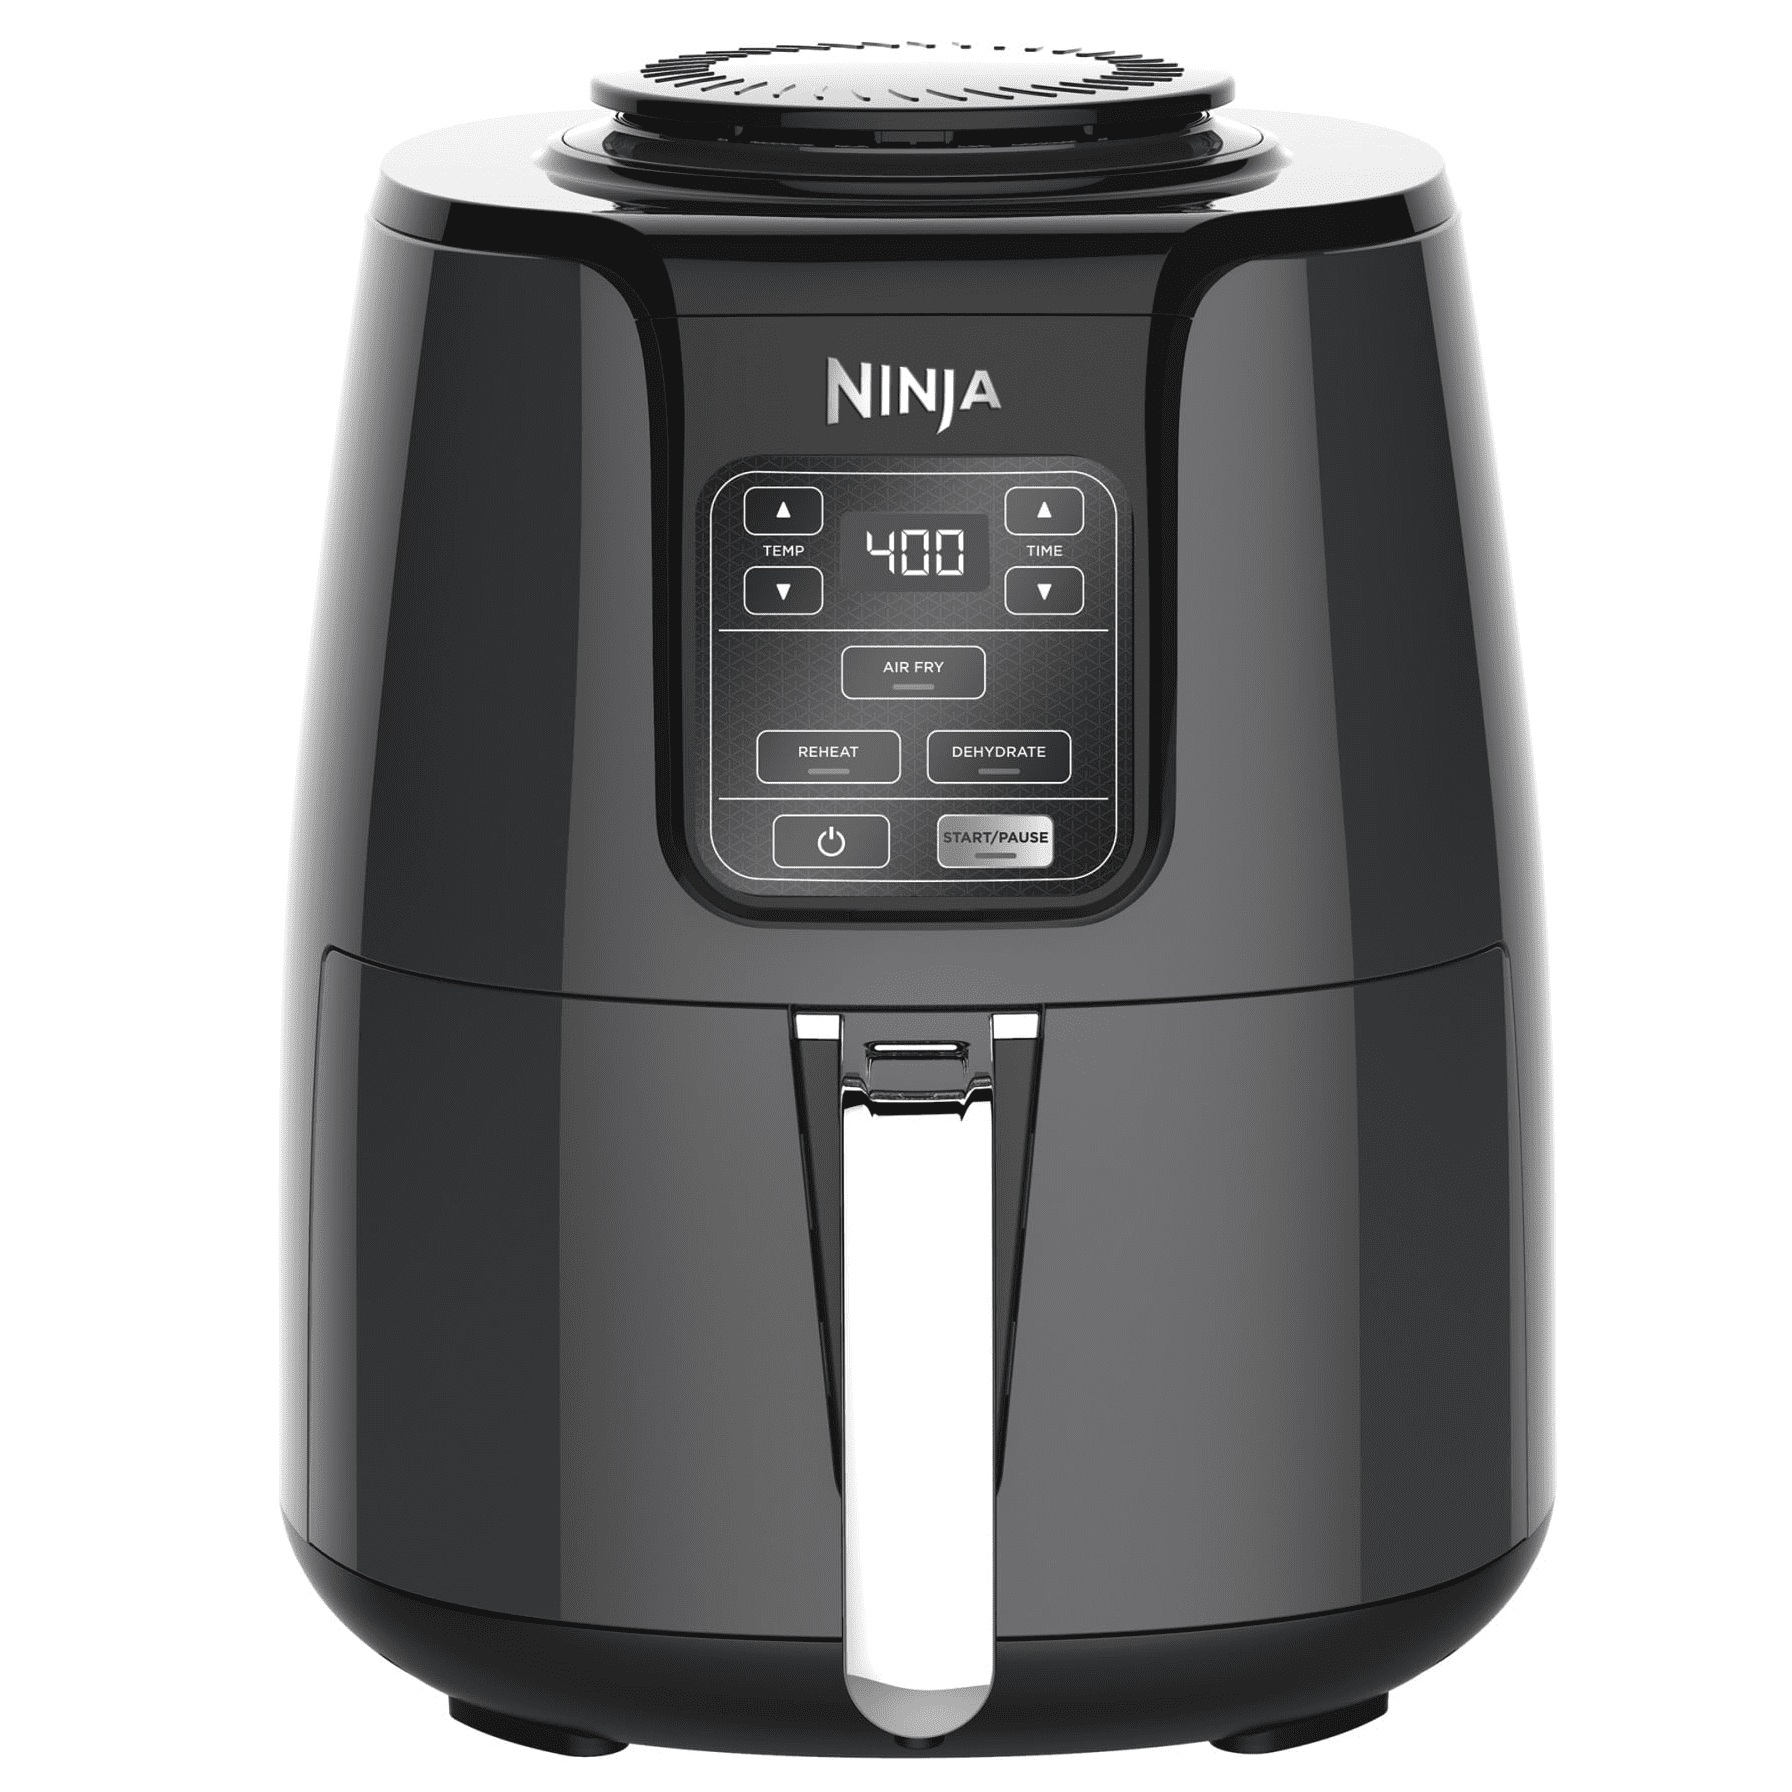 Ninja 4 Quart Air Fryer with Reheat & Dehydrate, Black, Silver, AF100WM